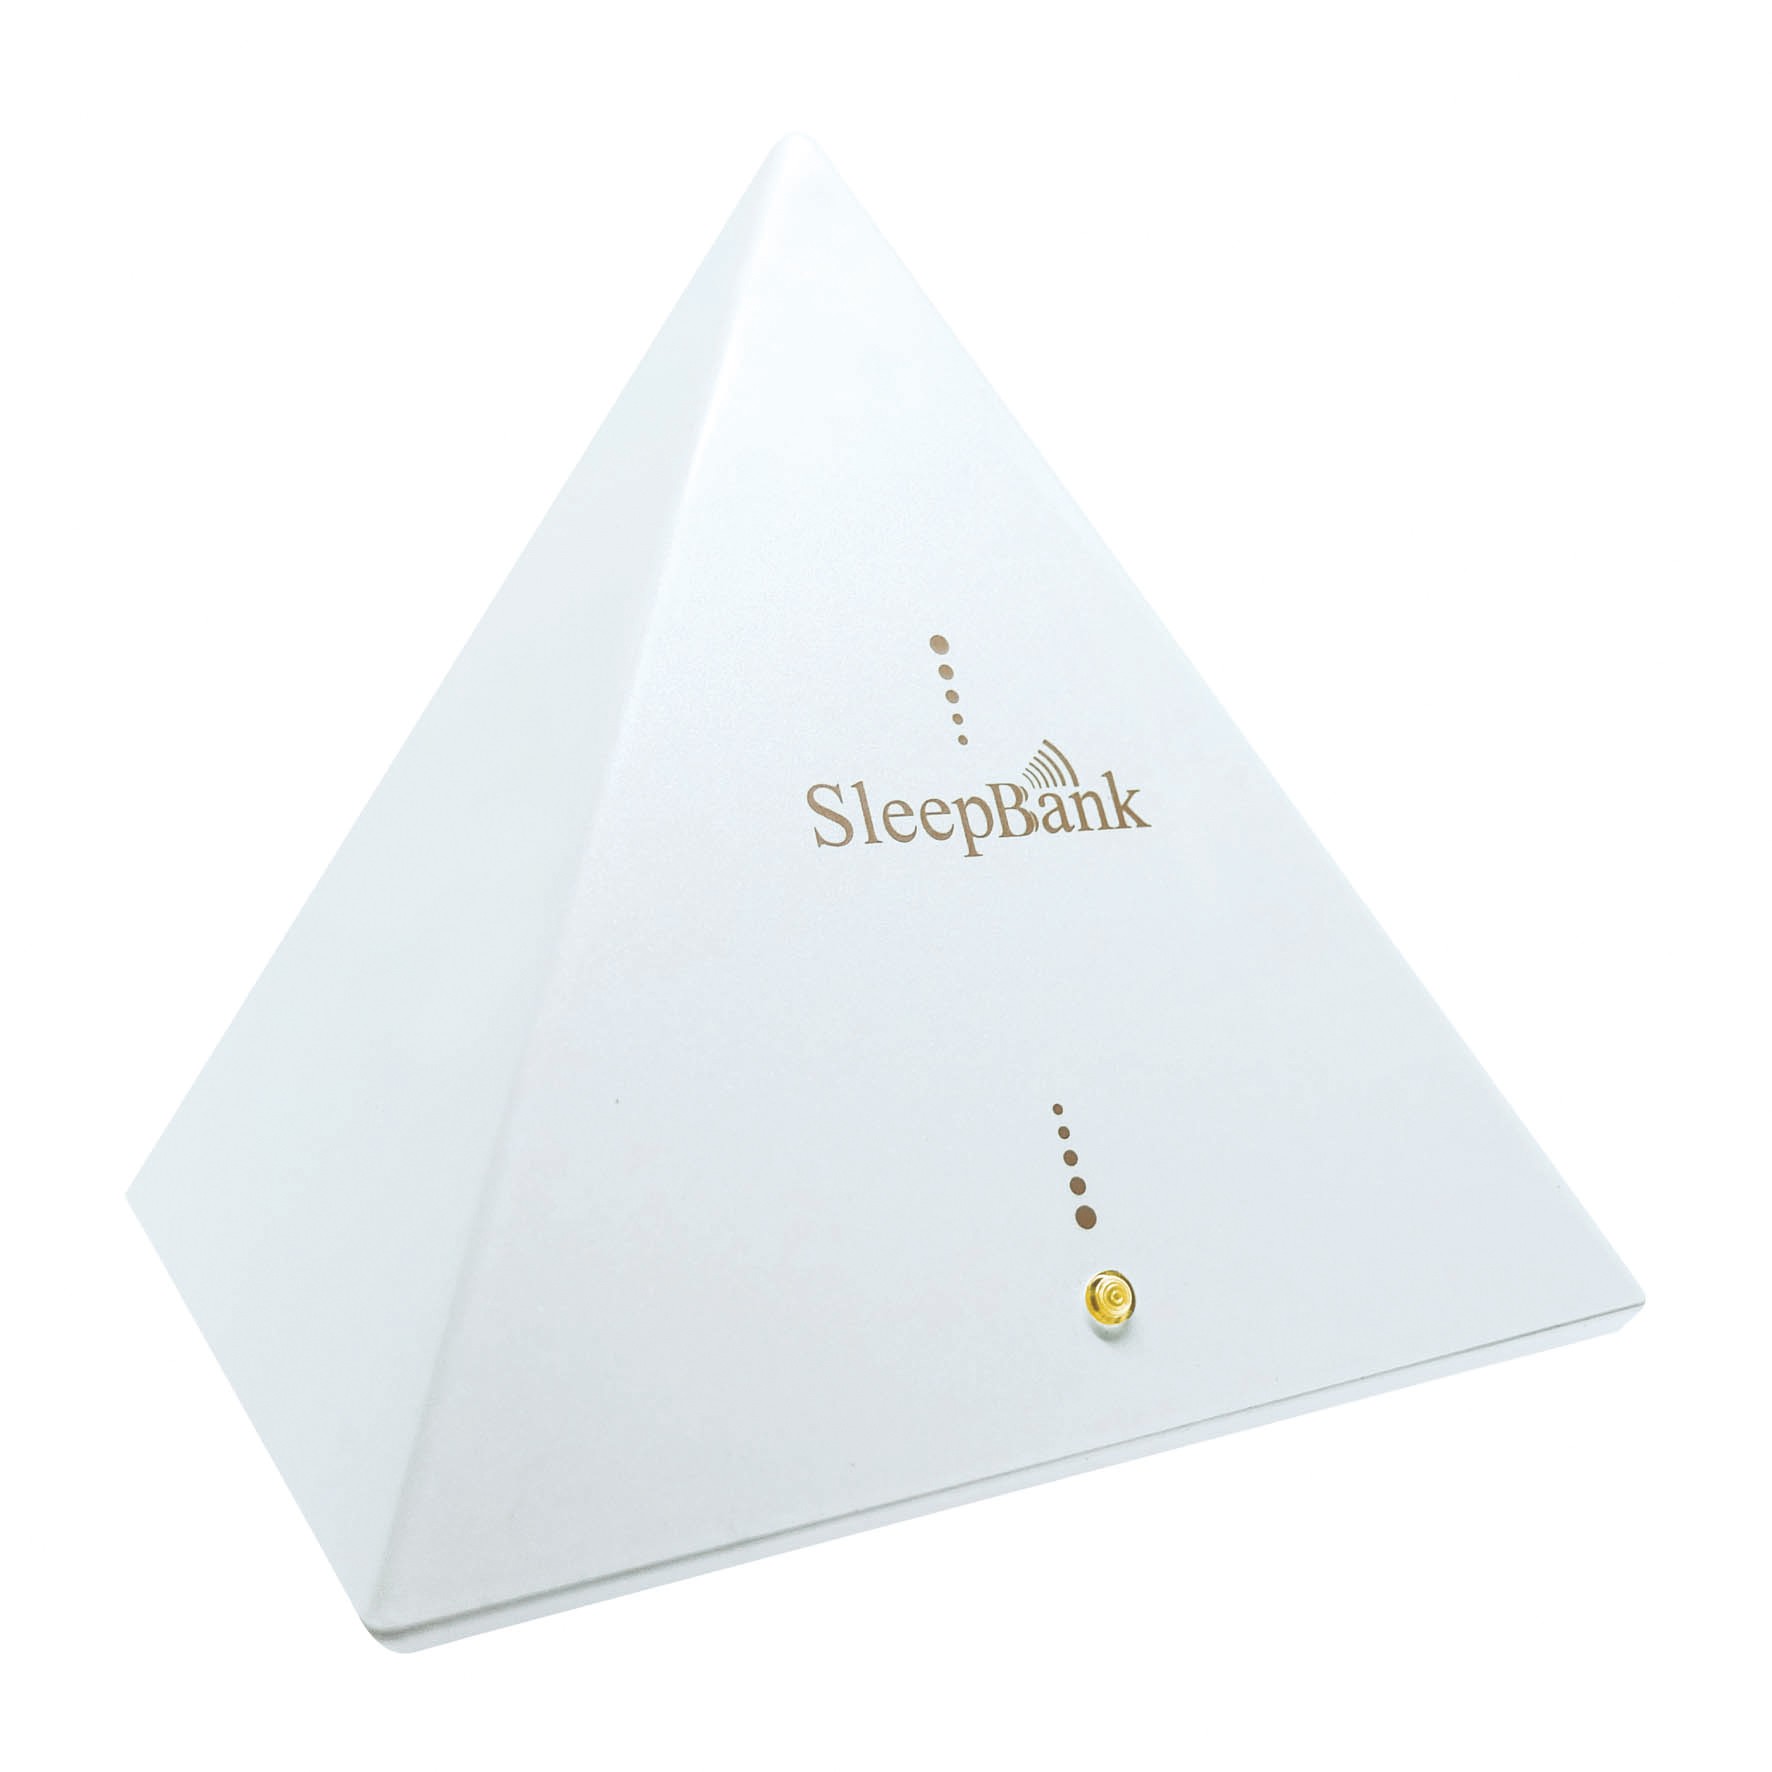 SleepBank